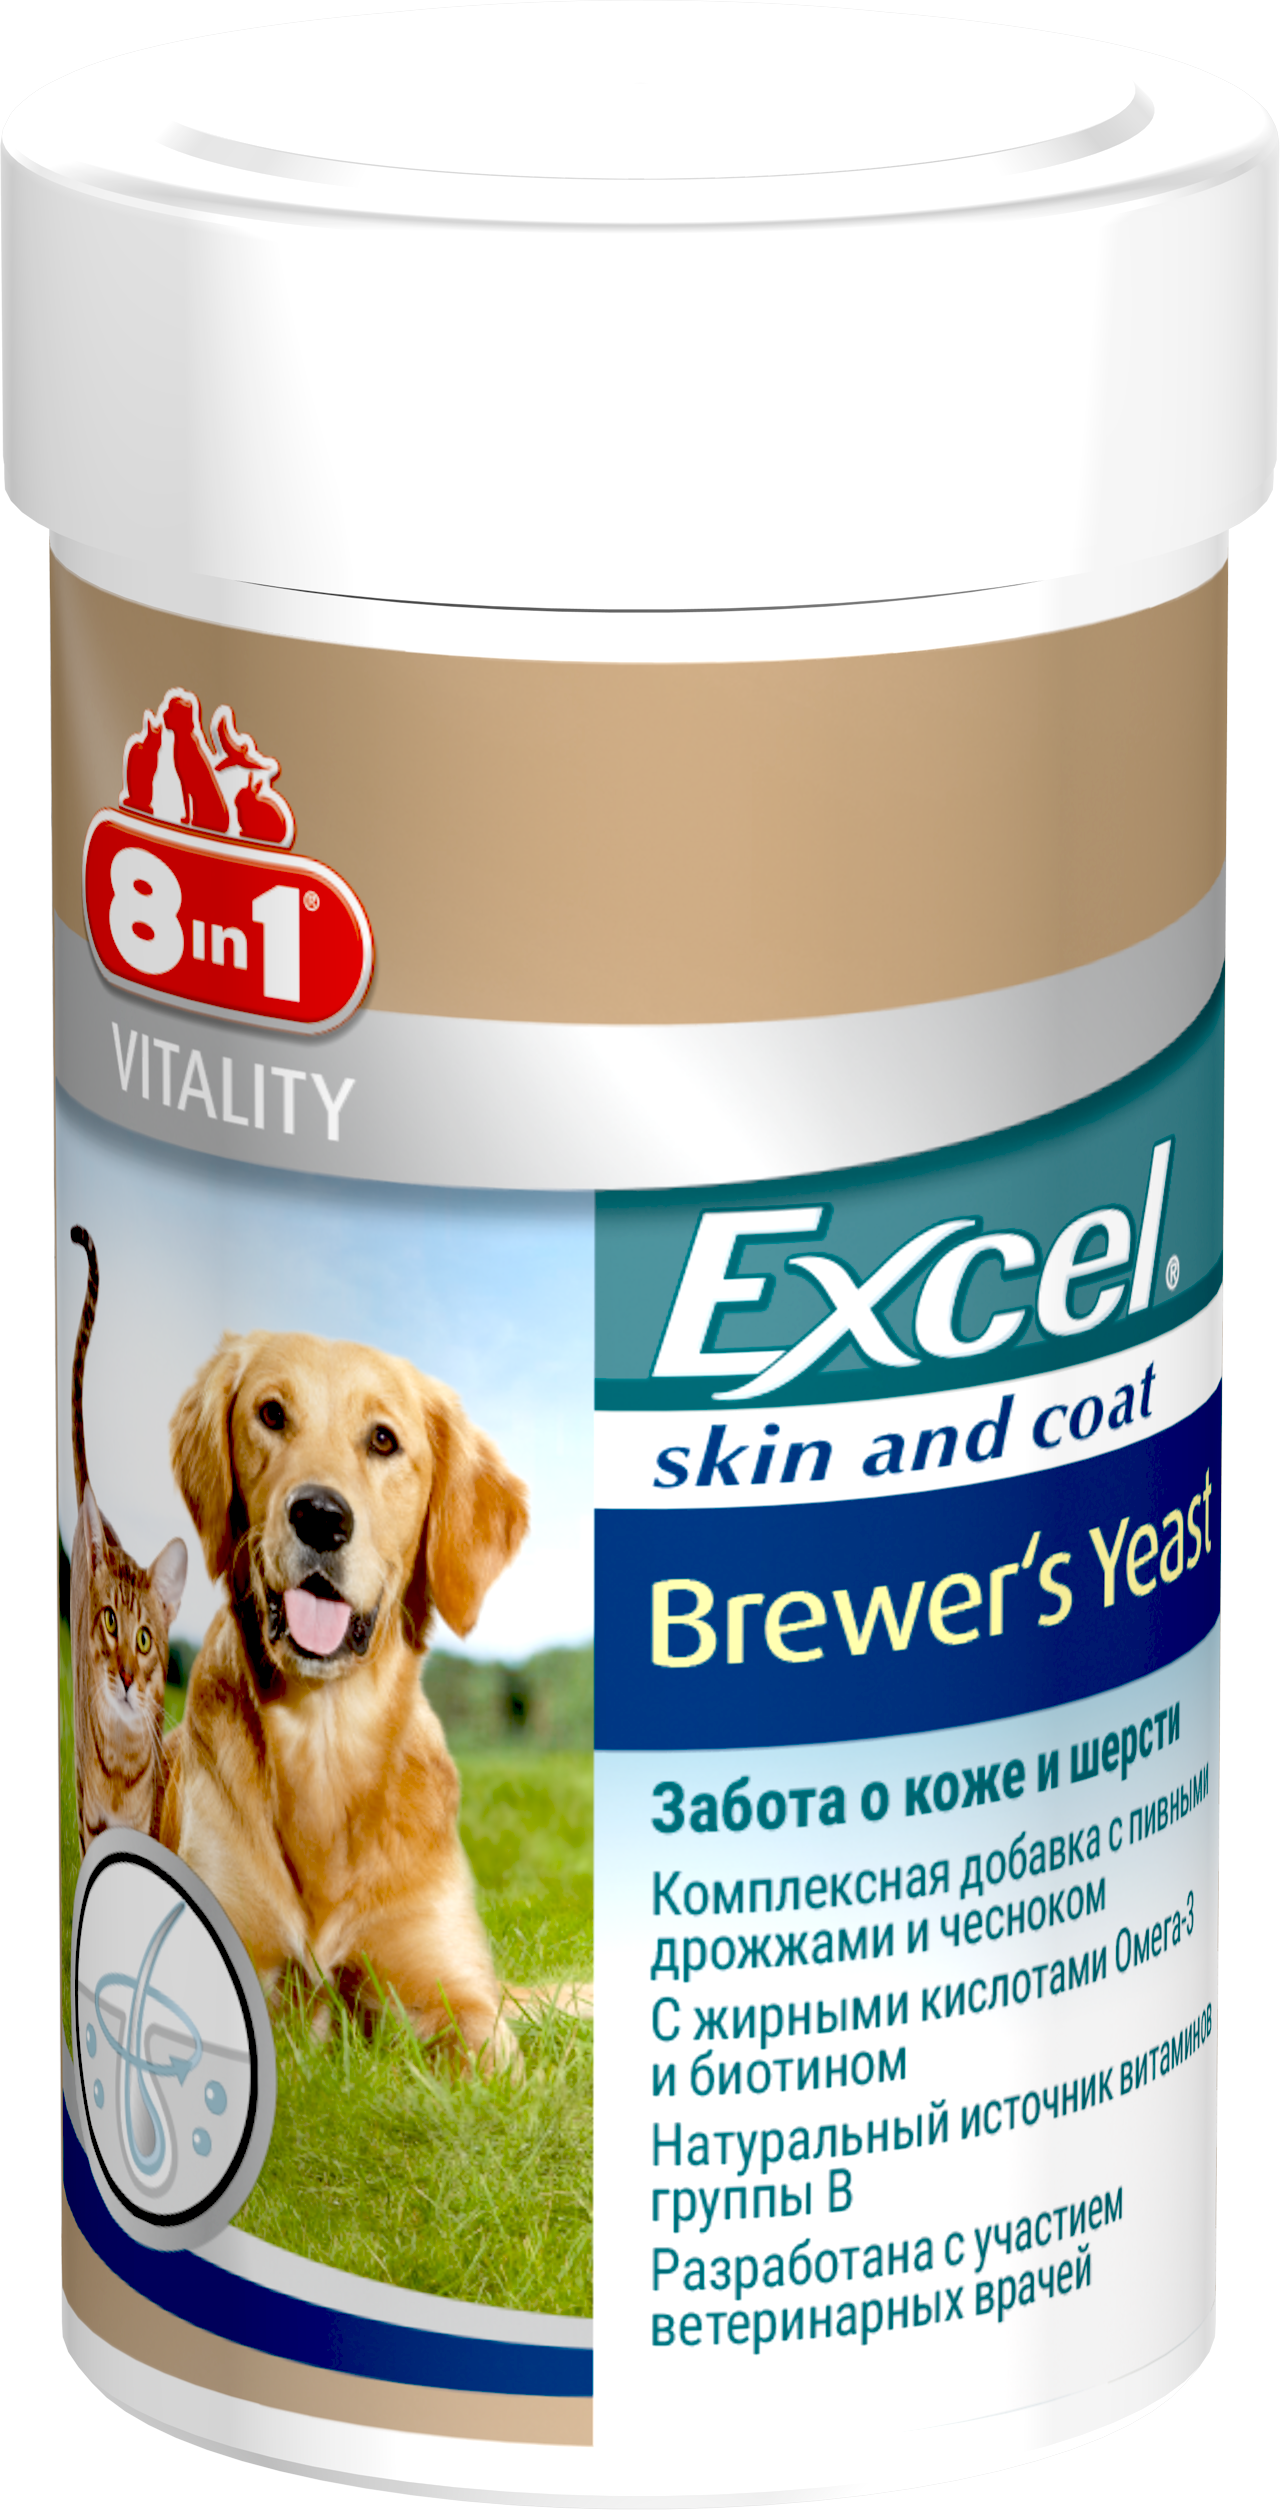 8в1 витамины для собак. Excel Brewers yeast 8 in 1 для собак. Эксель 8 в 1 для щенков. Витамины эксель 8 в 1 для кошек и собак. 8в 1 эксклт пивные дрожжи.